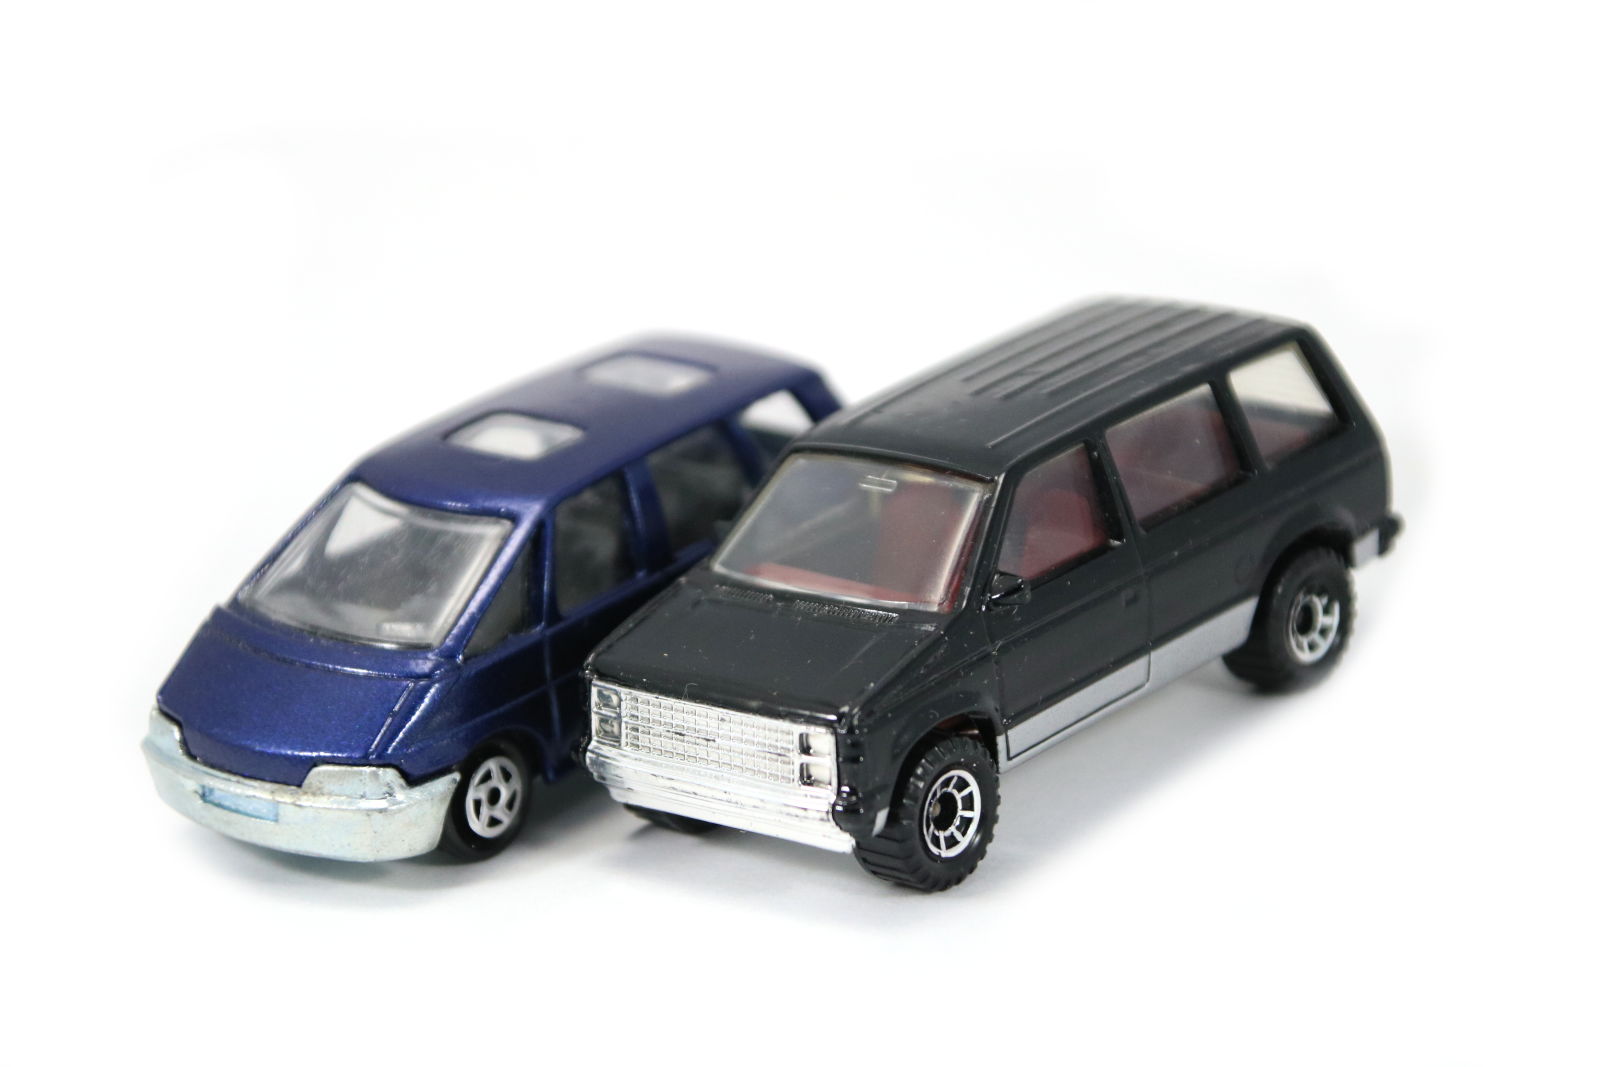 Majorette Renault Espace II and Matchbox Dodge Caravan I